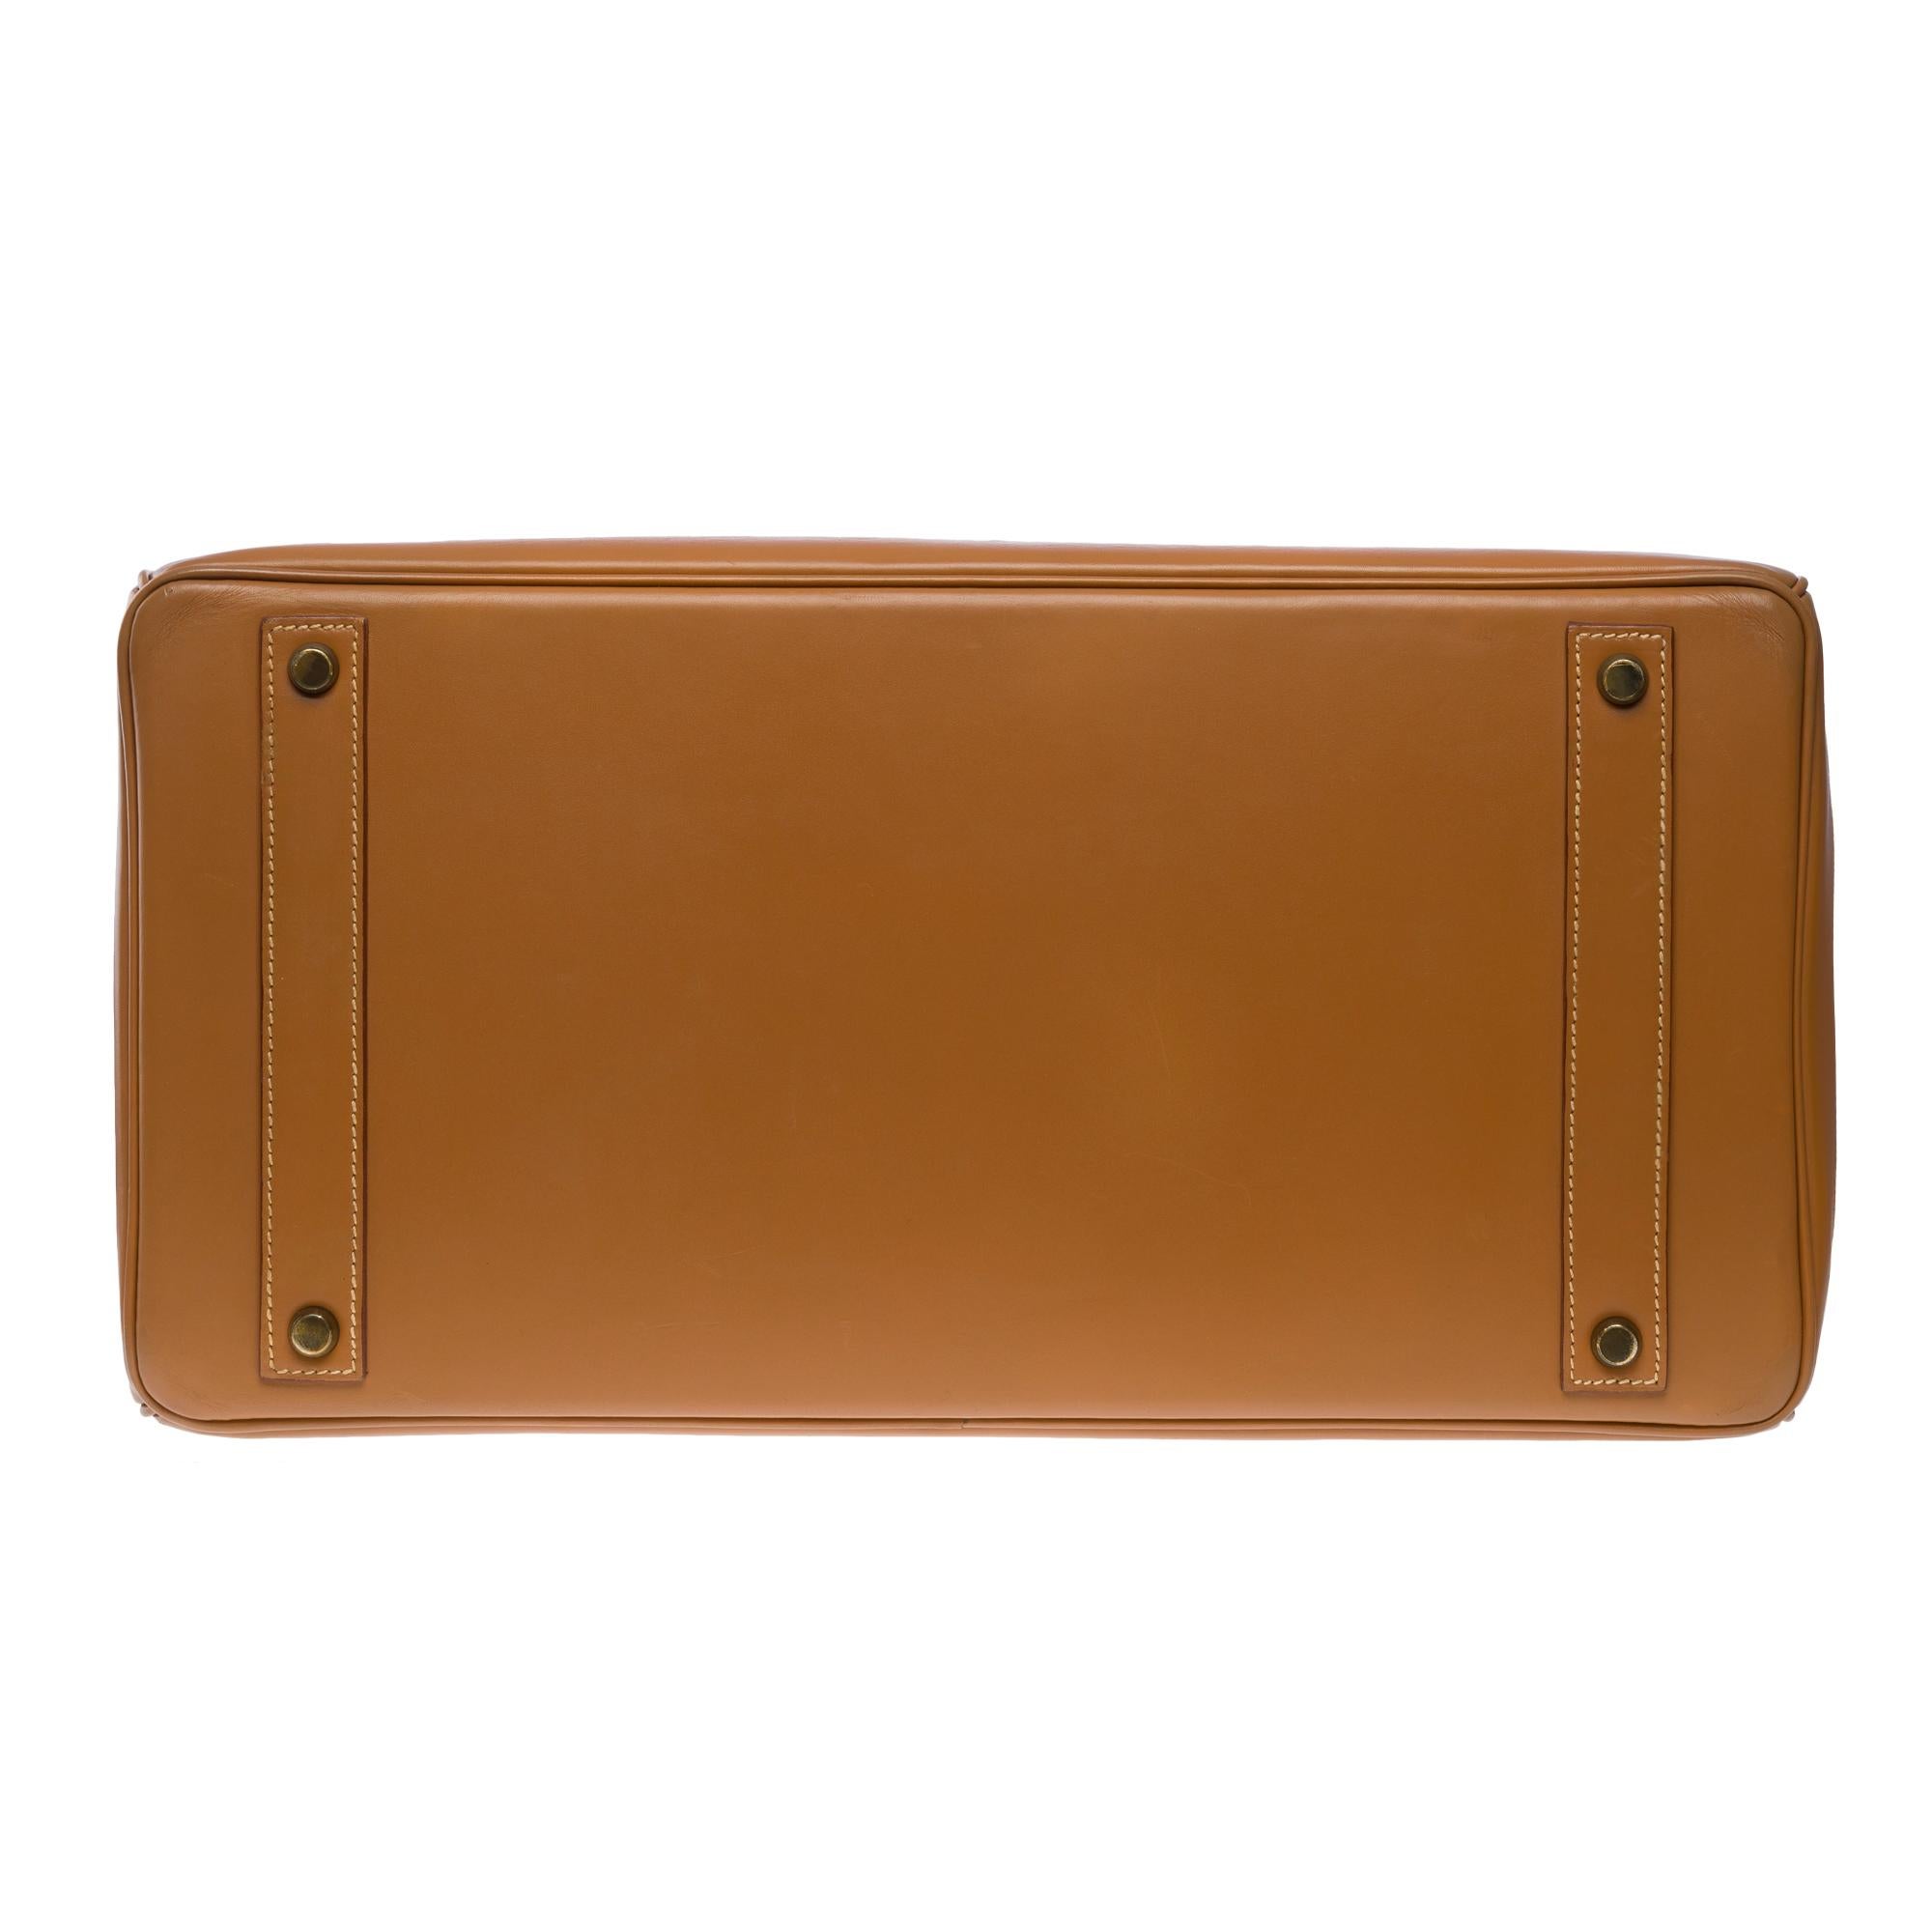 Fantastic Hermes Birkin 40 handbag in Camel (Gold) Chamonix leather, GHW For Sale 5